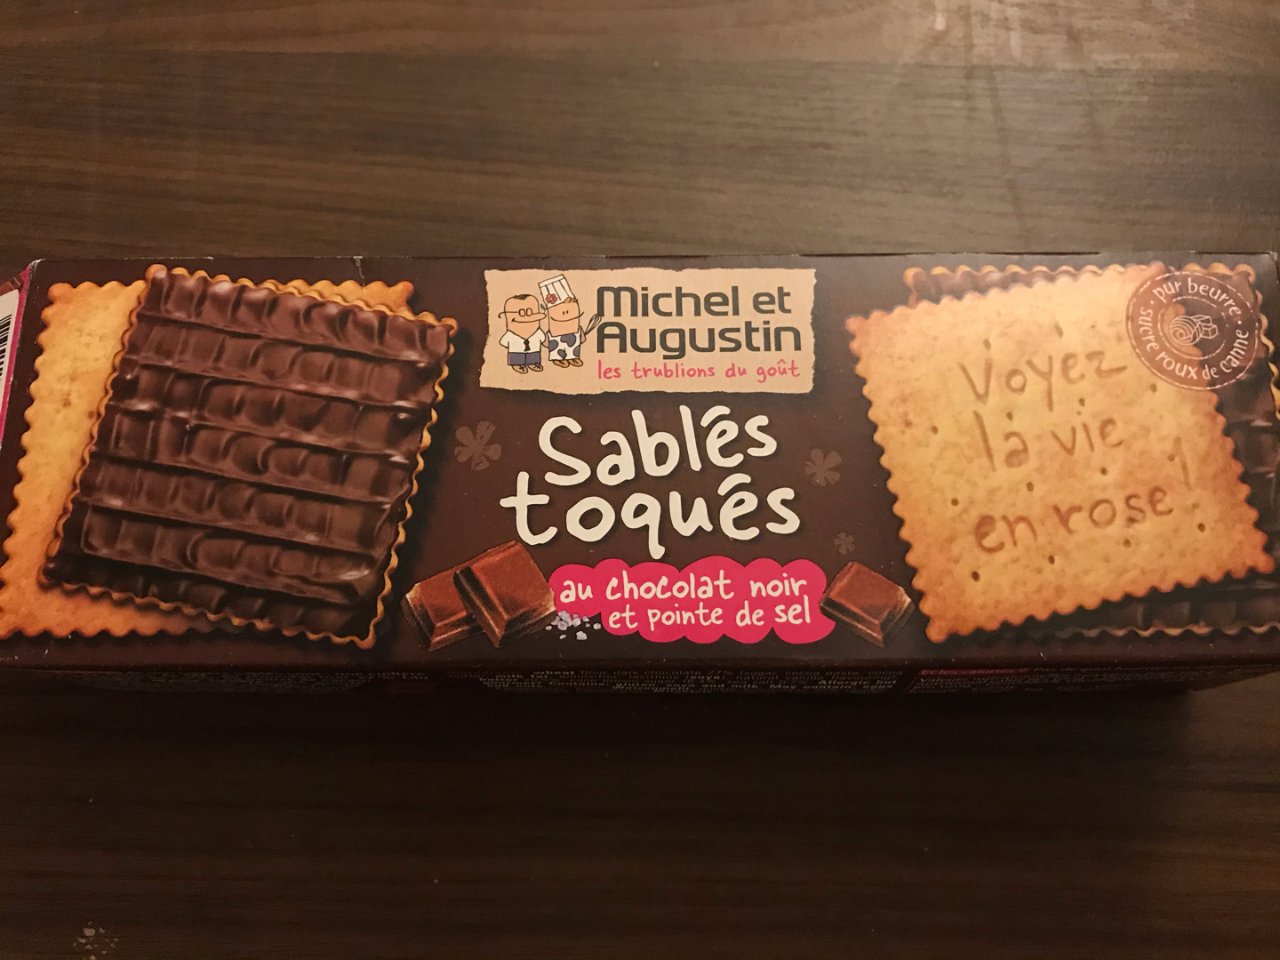 来自法国的巧克力小饼干🍪...